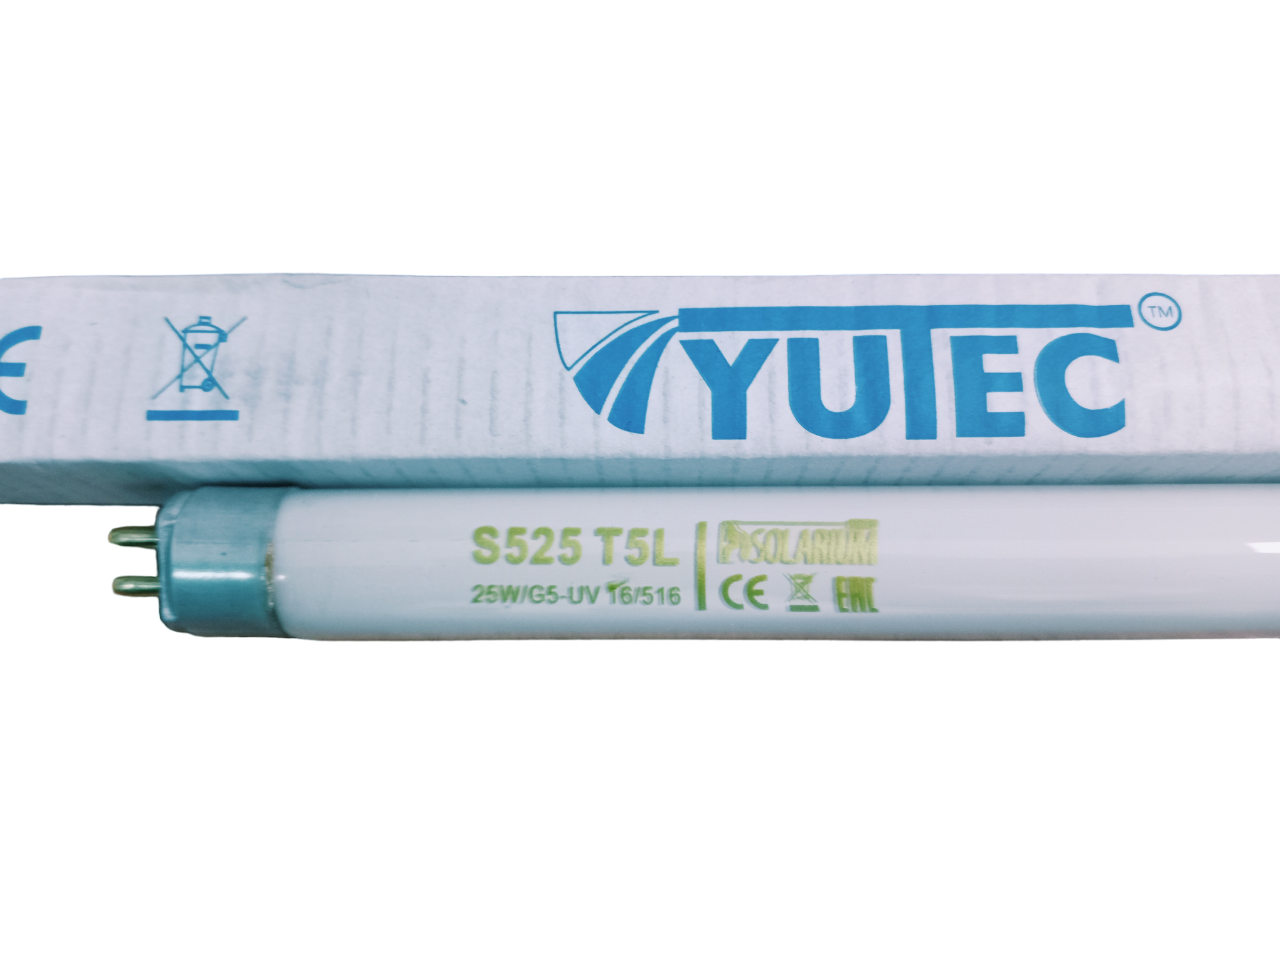 Лампа для Солярия Yutec 25Вт ультрафиолетовый биодозиметр yutec bio uv